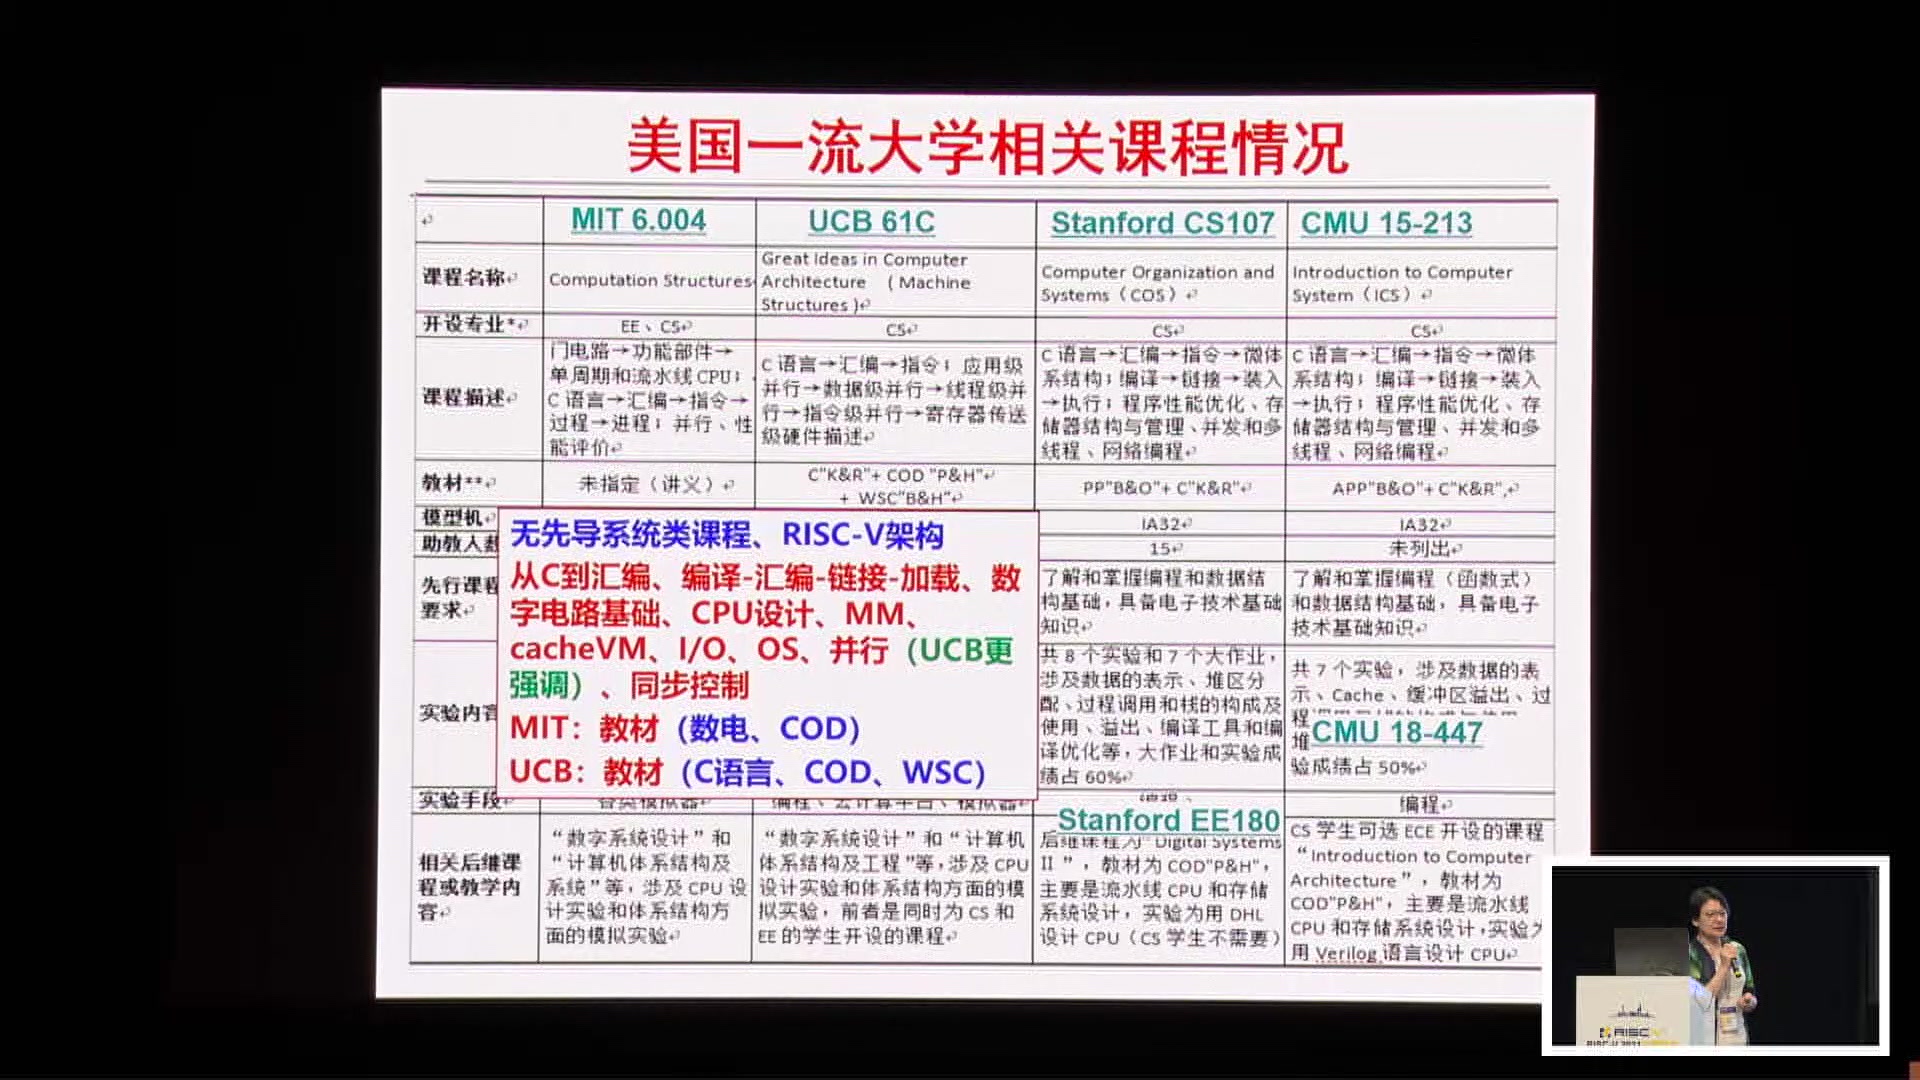 袁春风@南京大学 - 基于RISC-V架构的系统类课程教学现状与思考 - 第一届 RISC-V 中国 - 1